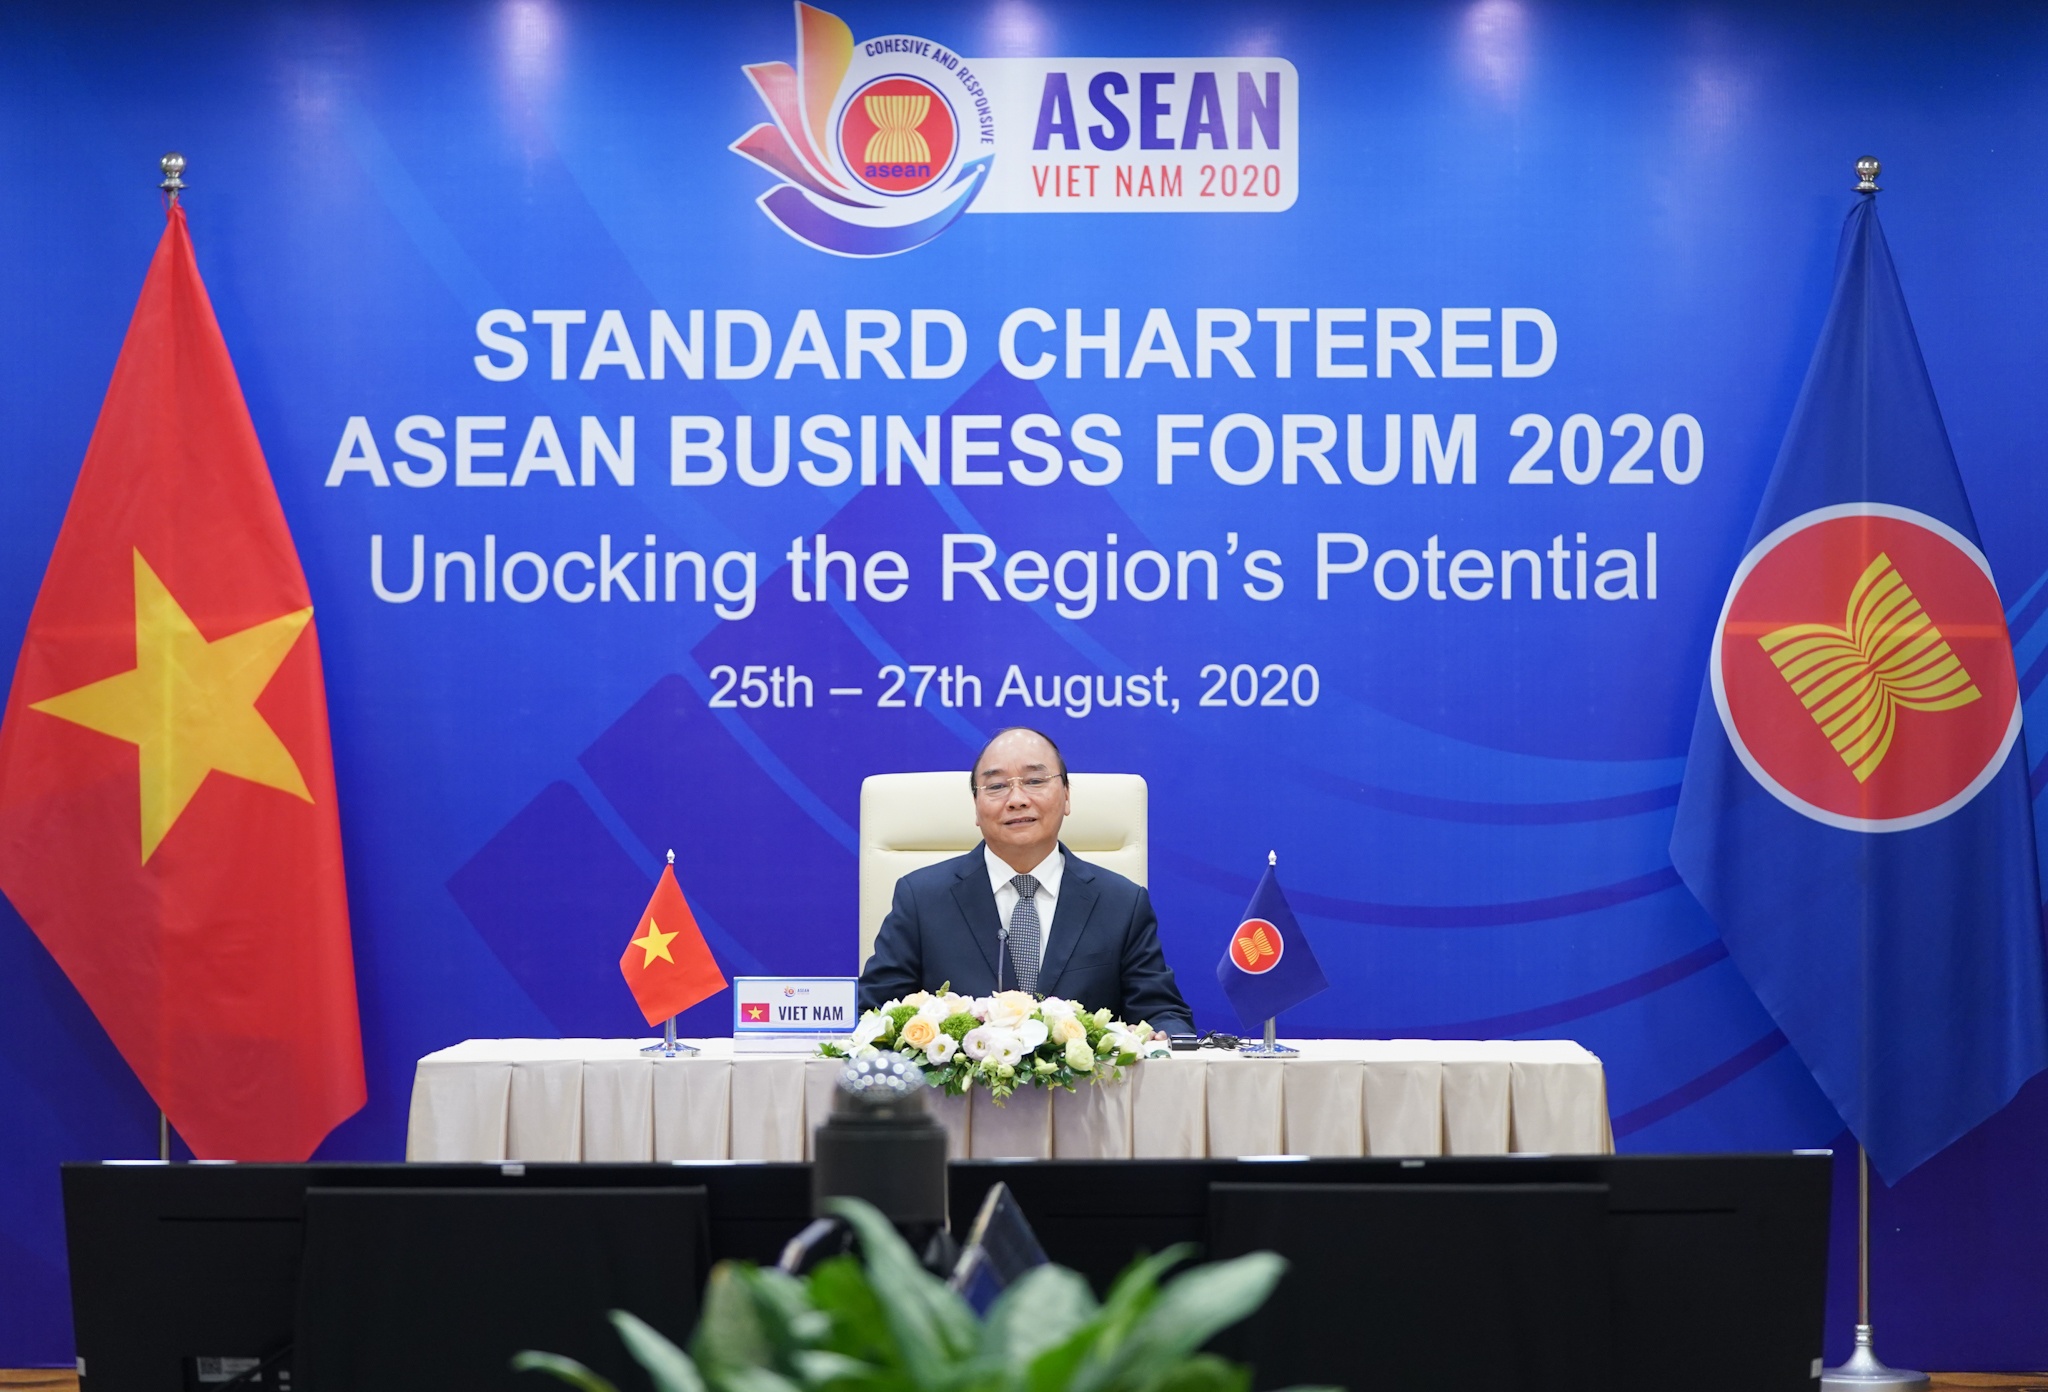 Hợp tác kinh tế ASEAN: Nhờ sự hợp tác chặt chẽ trong khu vực, ASEAN đã trở thành một trung tâm kinh tế có uy tín toàn cầu. Các quốc gia thành viên đã cùng nhau thực hiện các chính sách thúc đẩy các hình thức hợp tác kinh tế khác nhau, từ tự do thương mại đến đầu tư và kết nối hạ tầng. Bức ảnh kèm theo sẽ cho bạn thấy được những dấu ấn của sự hợp tác kinh tế ASEAN trên khắp khu vực này.